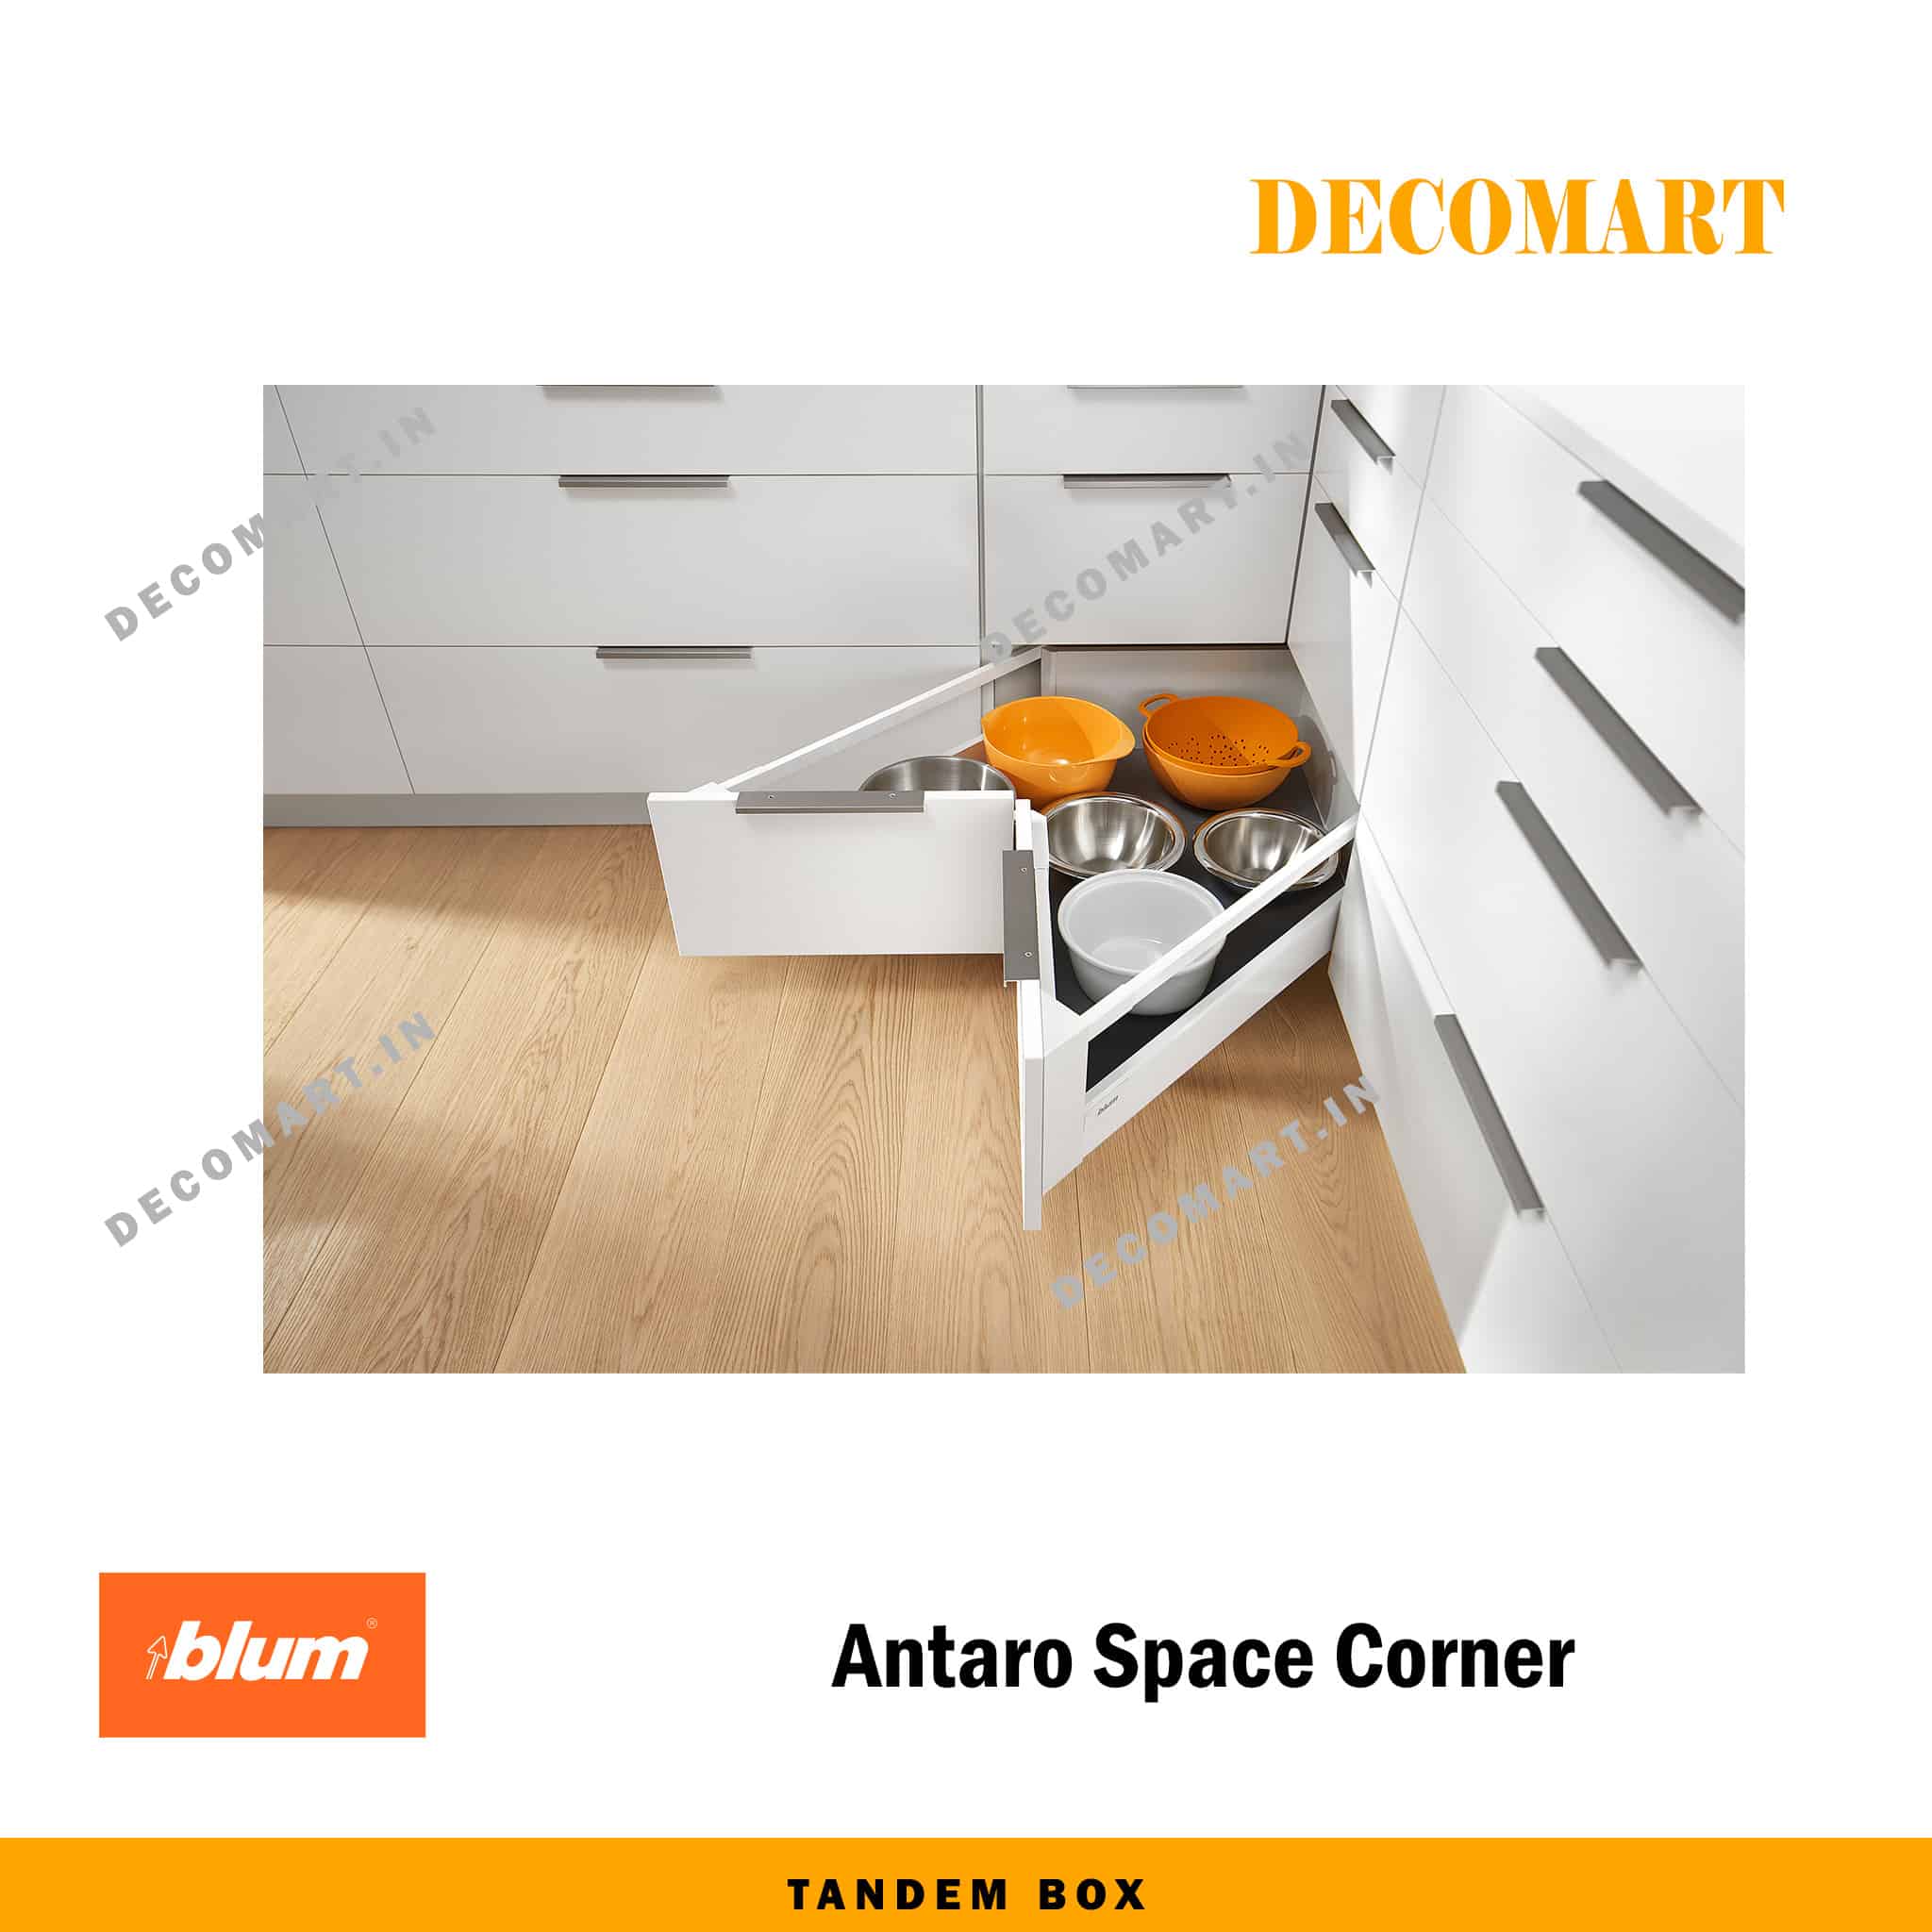 Blum Antaro Space Corner